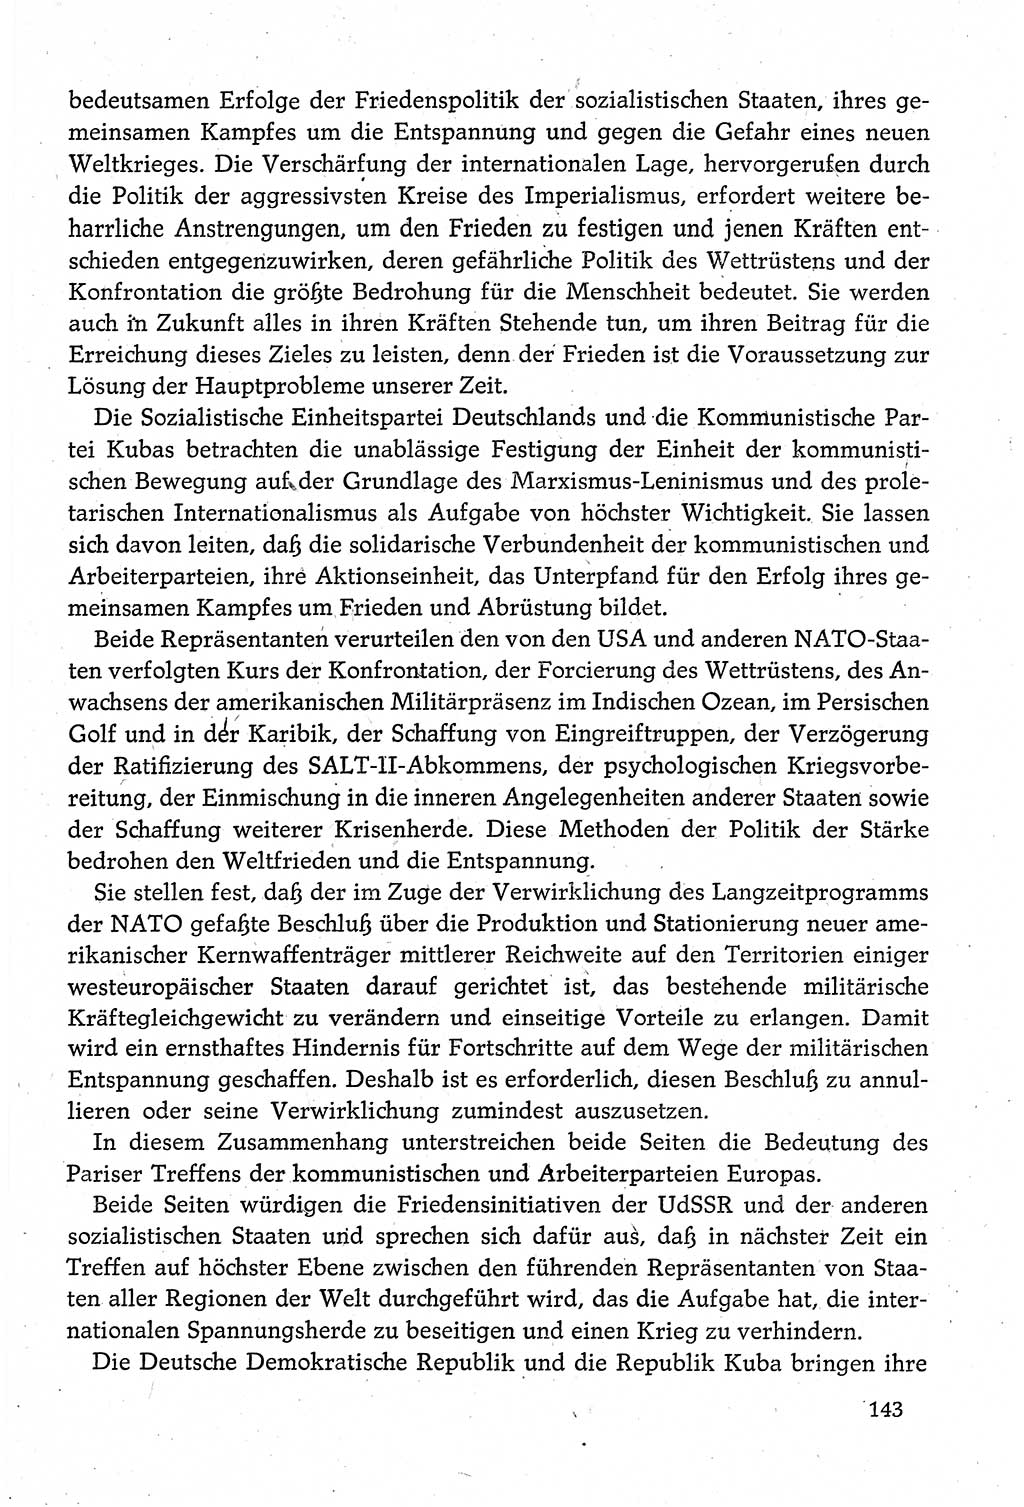 Dokumente der Sozialistischen Einheitspartei Deutschlands (SED) [Deutsche Demokratische Republik (DDR)] 1980-1981, Seite 143 (Dok. SED DDR 1980-1981, S. 143)